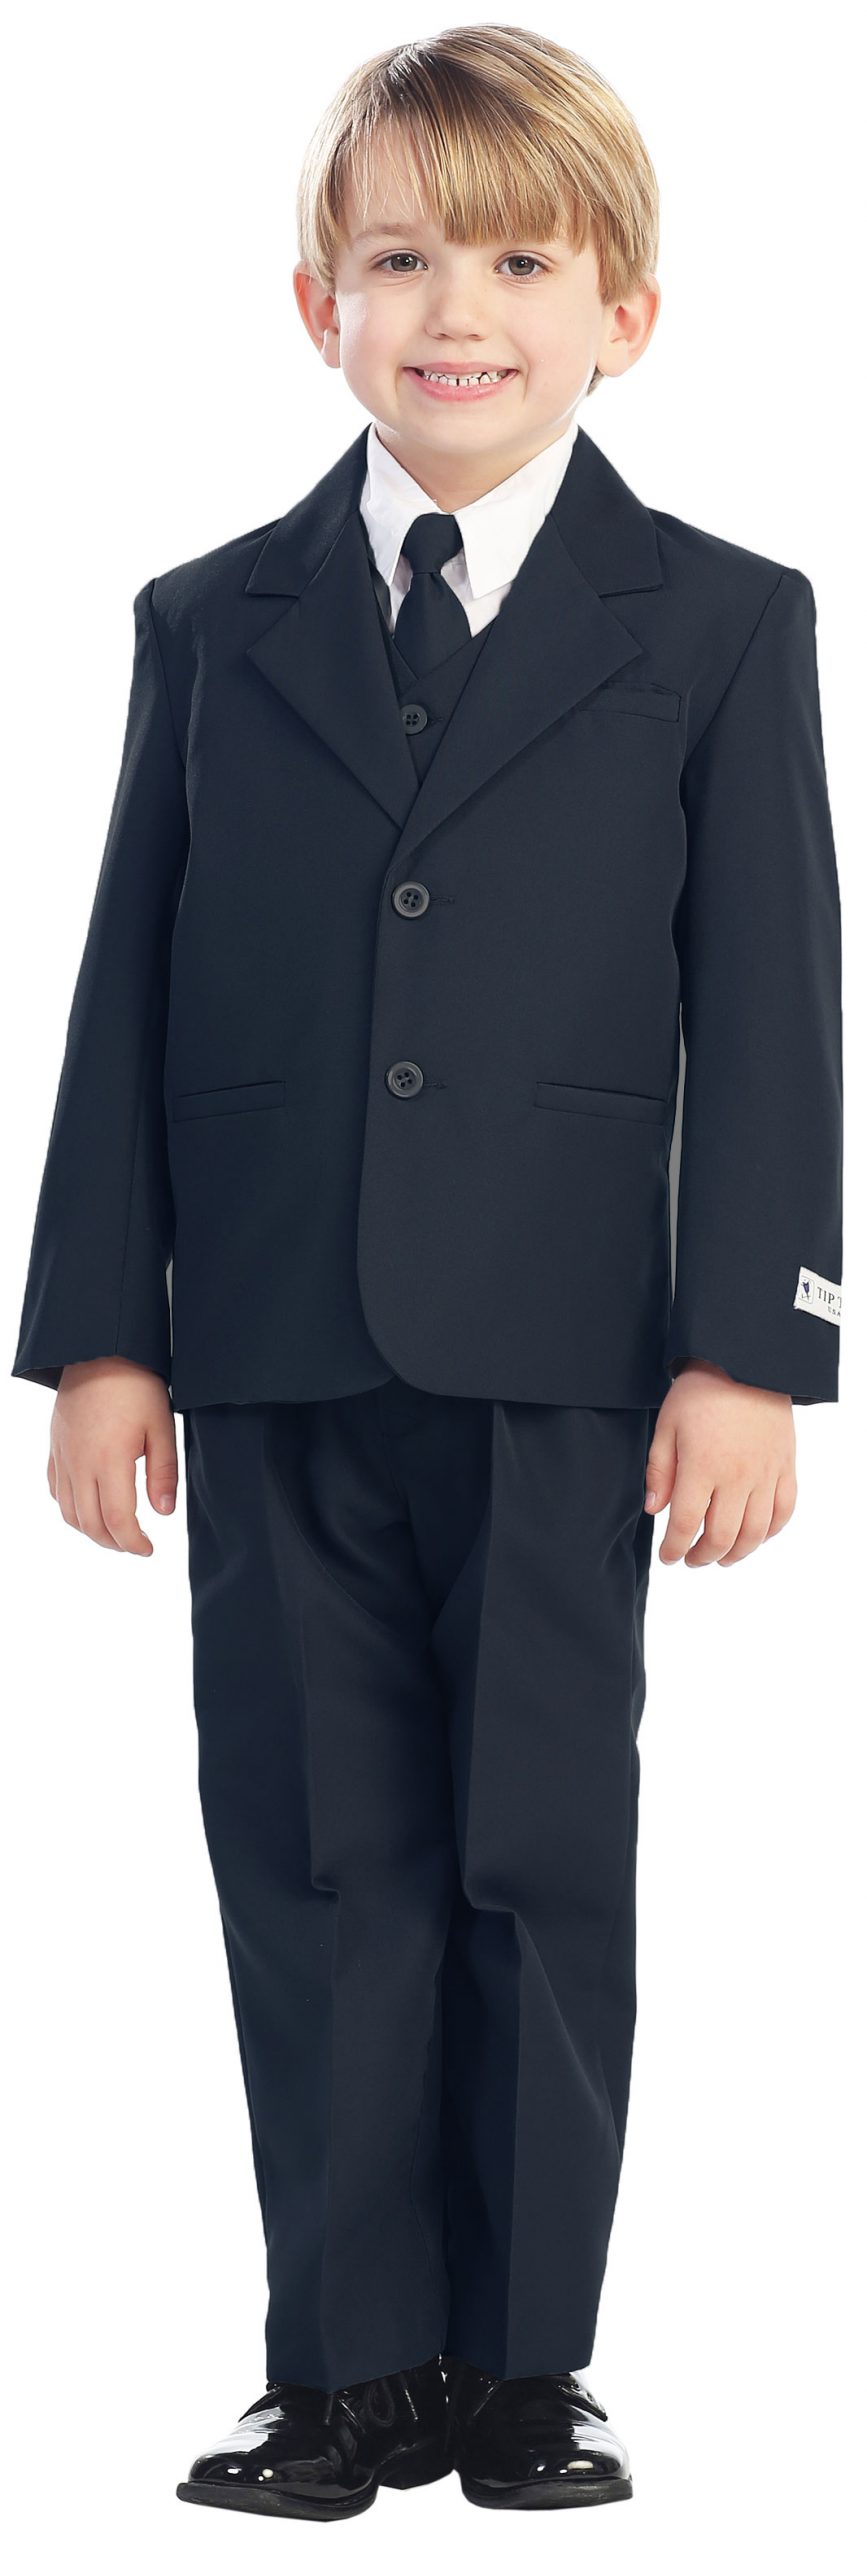 Avery Hill 5-Piece Boy's 2-Button Dress Suit Full-Back Vest - Navy Blue Size 3